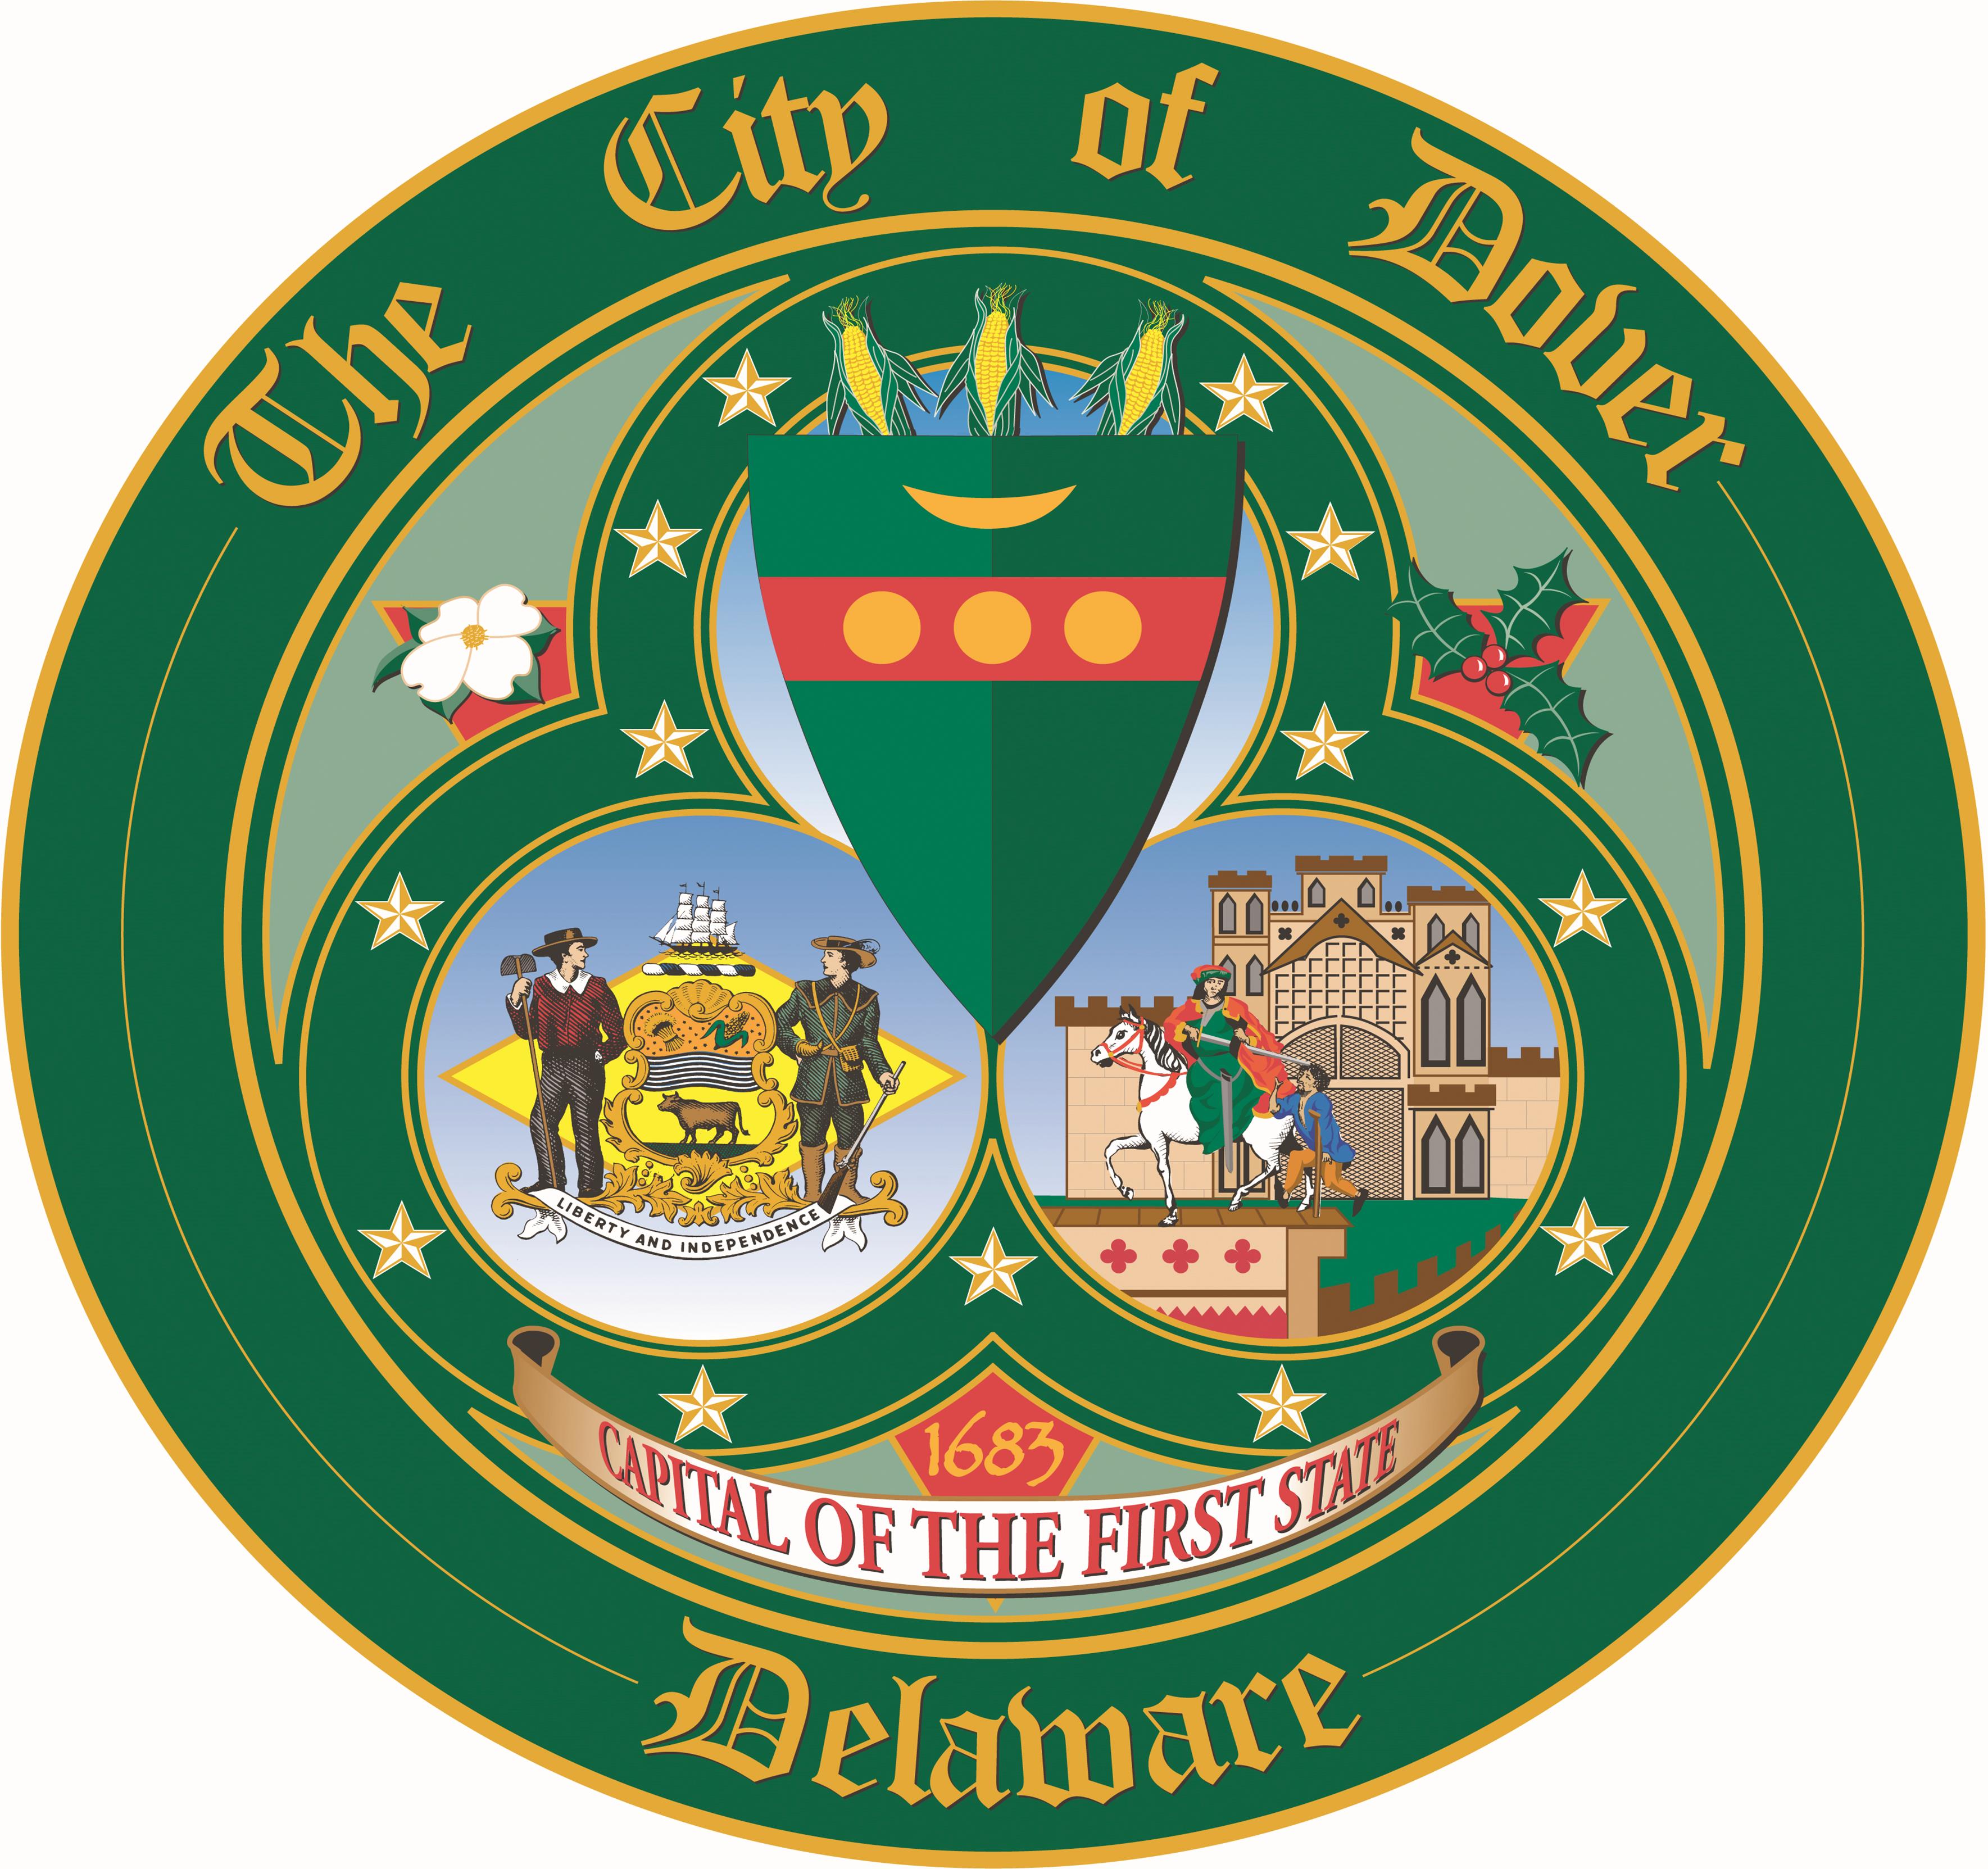 Dover DE - Dover DE Streaming Player - organization logo